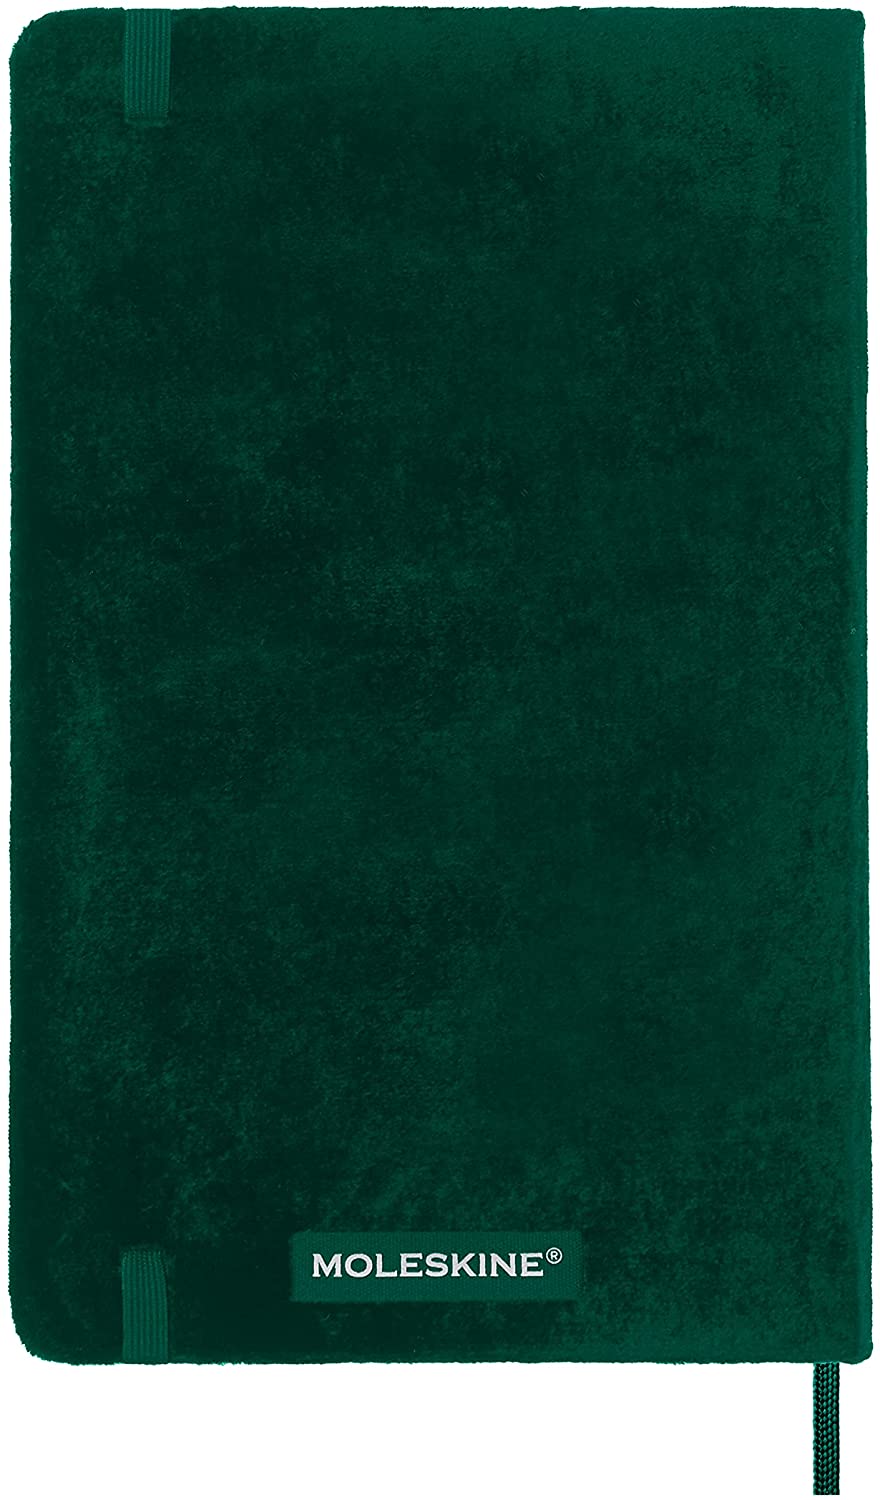 Carnet - Moleskine Velvet - Large, Hard Cover, Ruled - Green | Moleskine image2